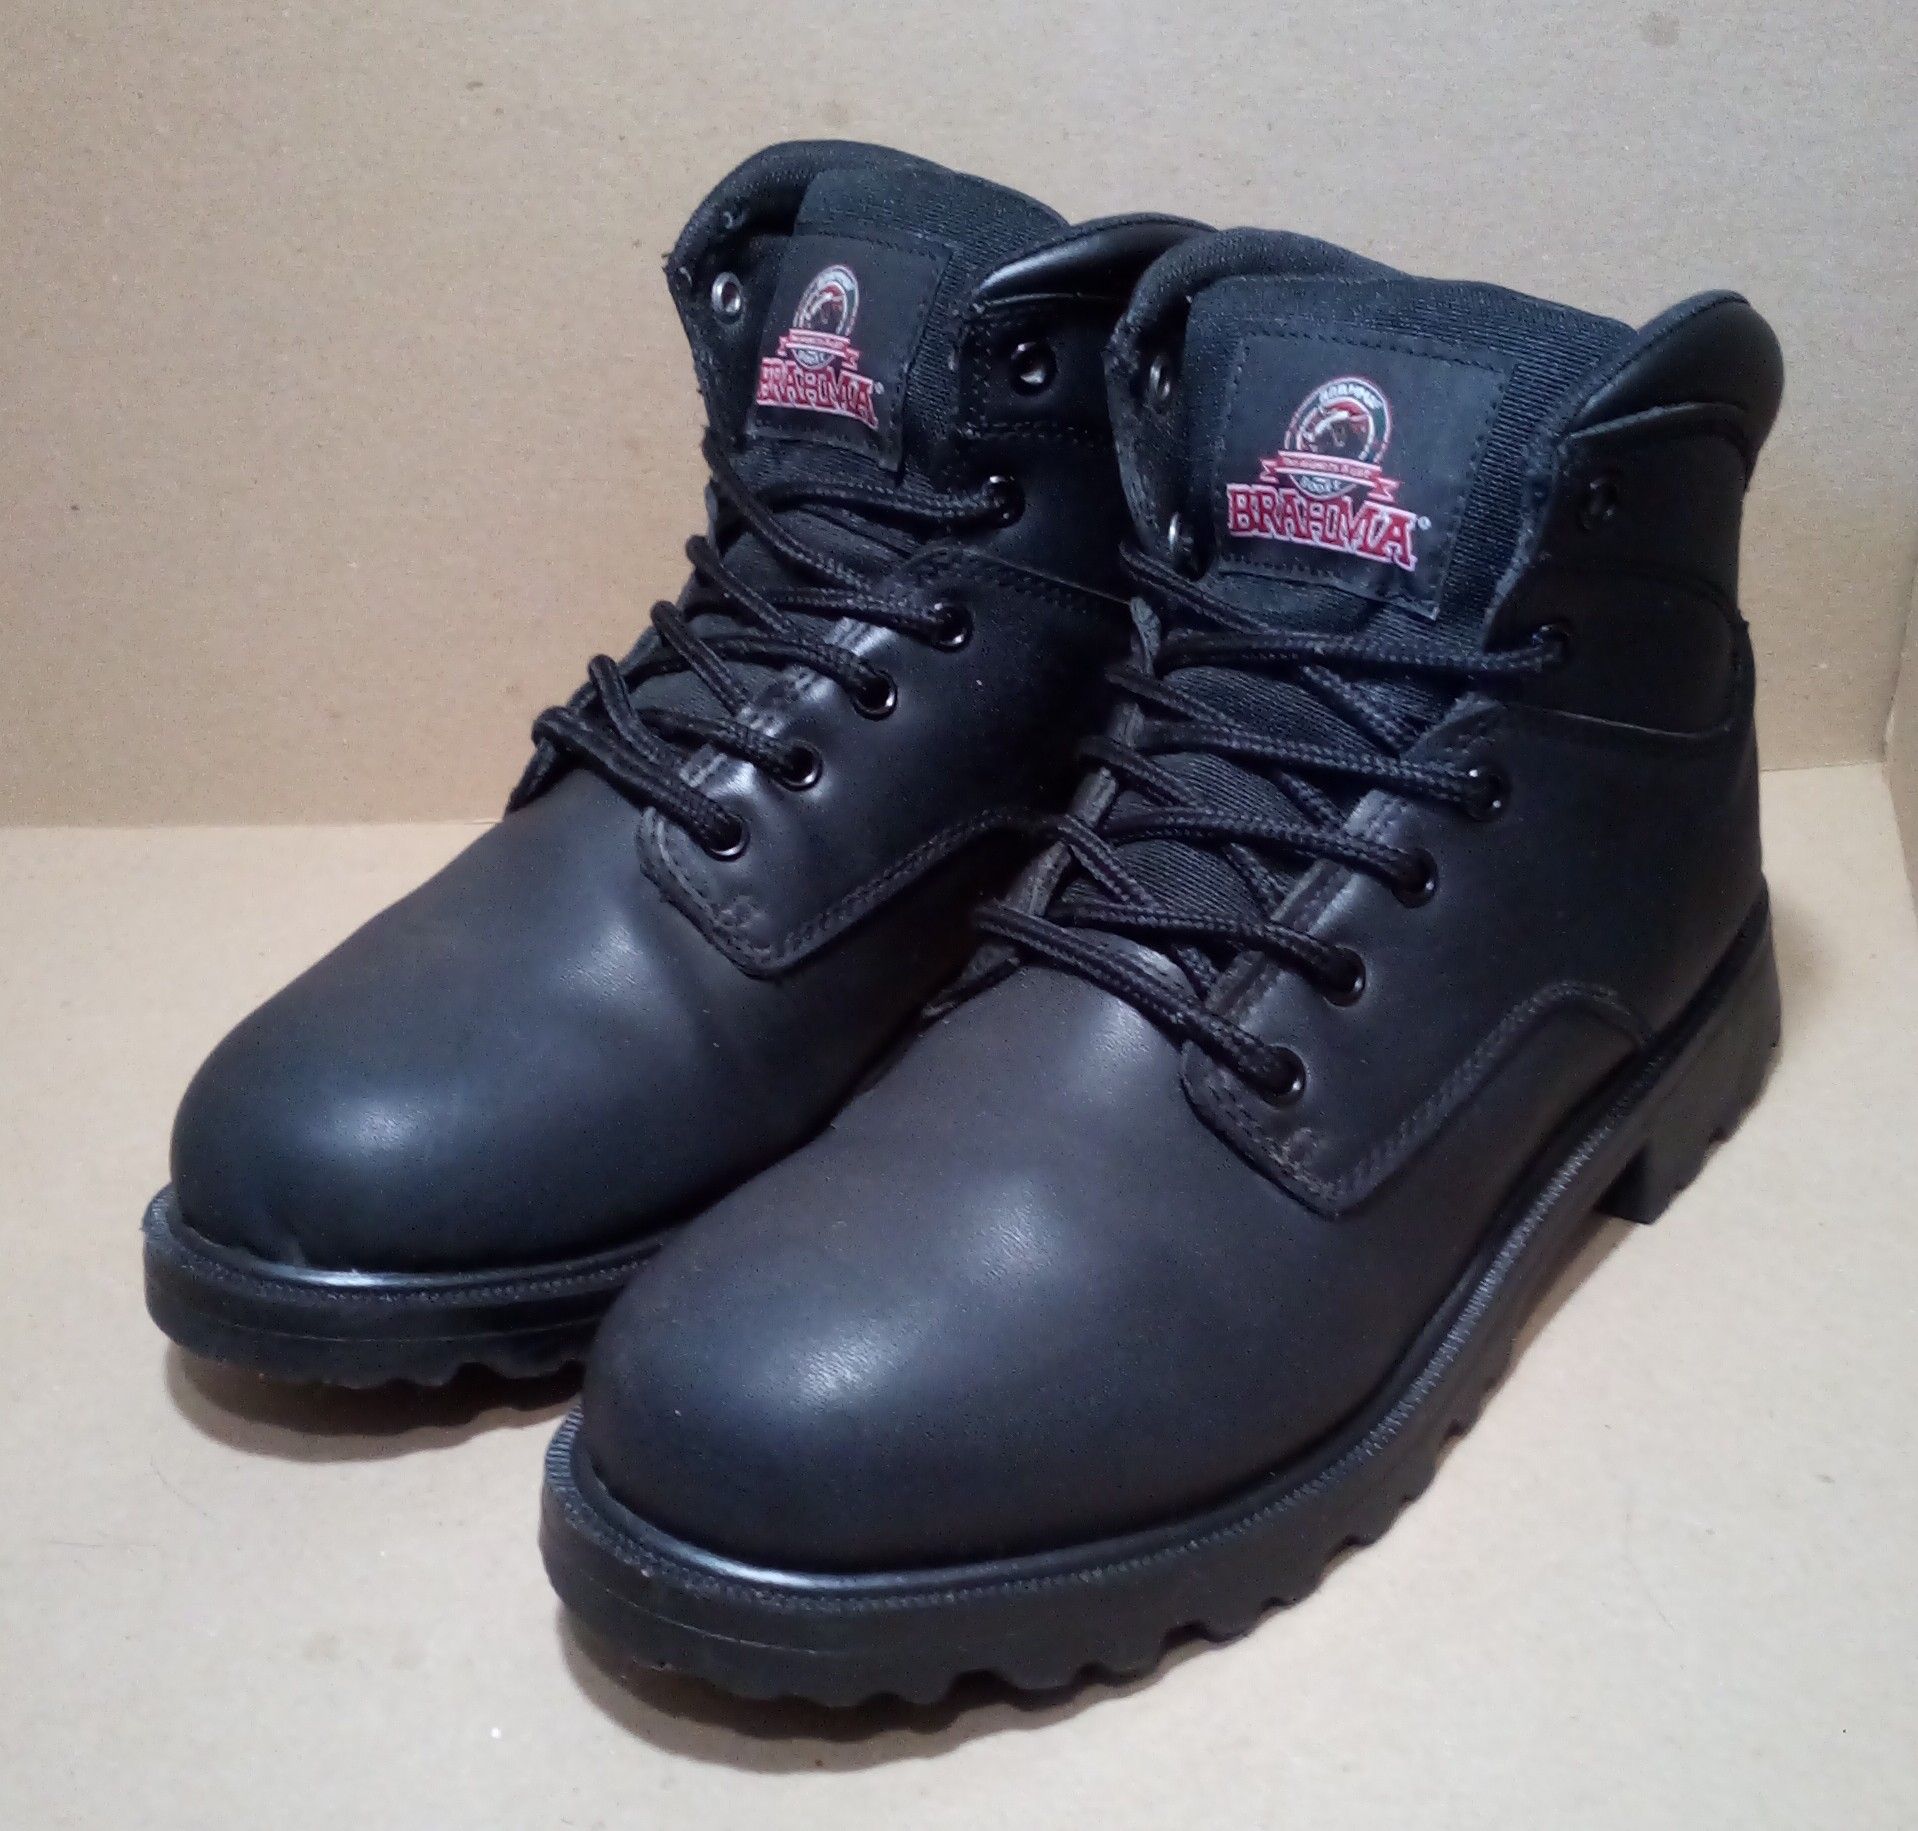 Black Leather Brahma Steel-Toe Work Boots